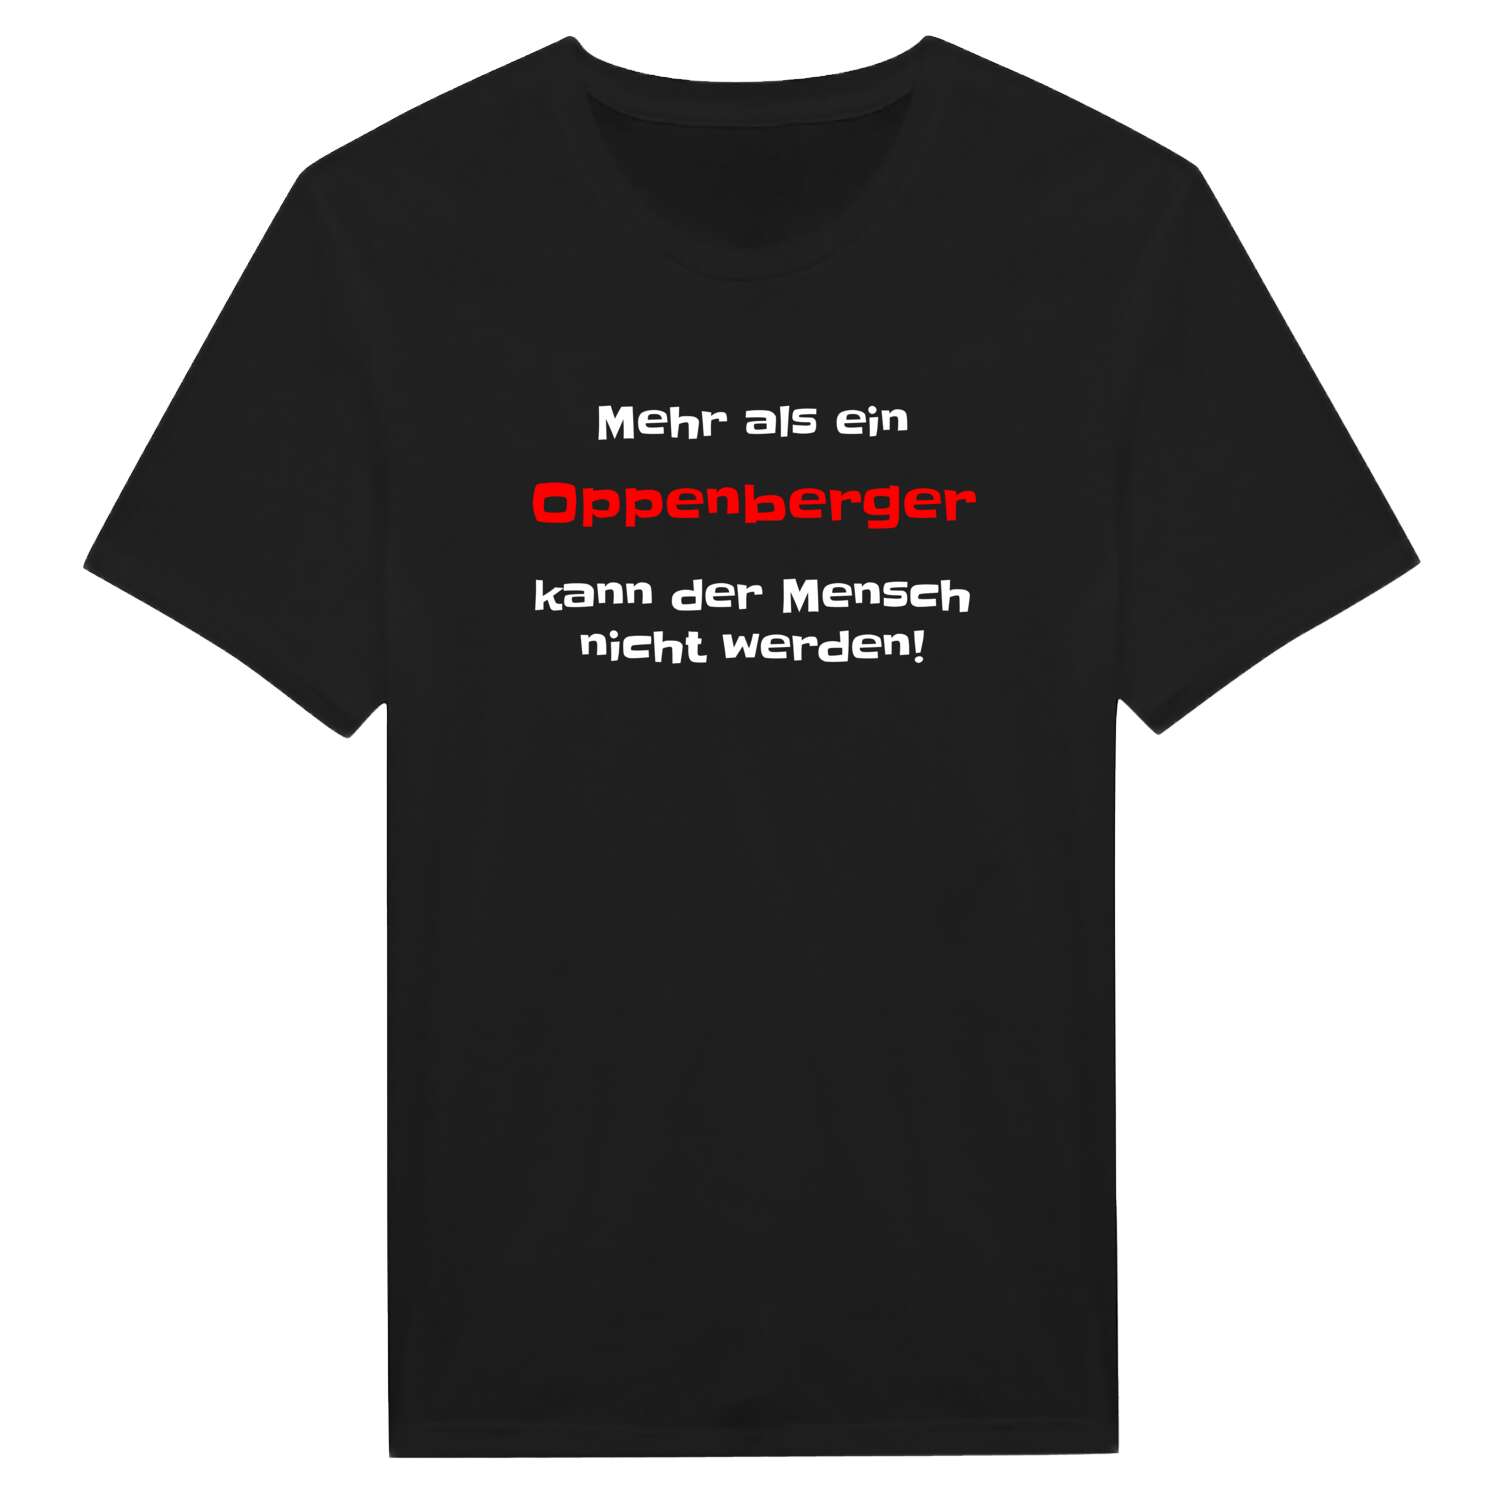 Oppenberg T-Shirt »Mehr als ein«